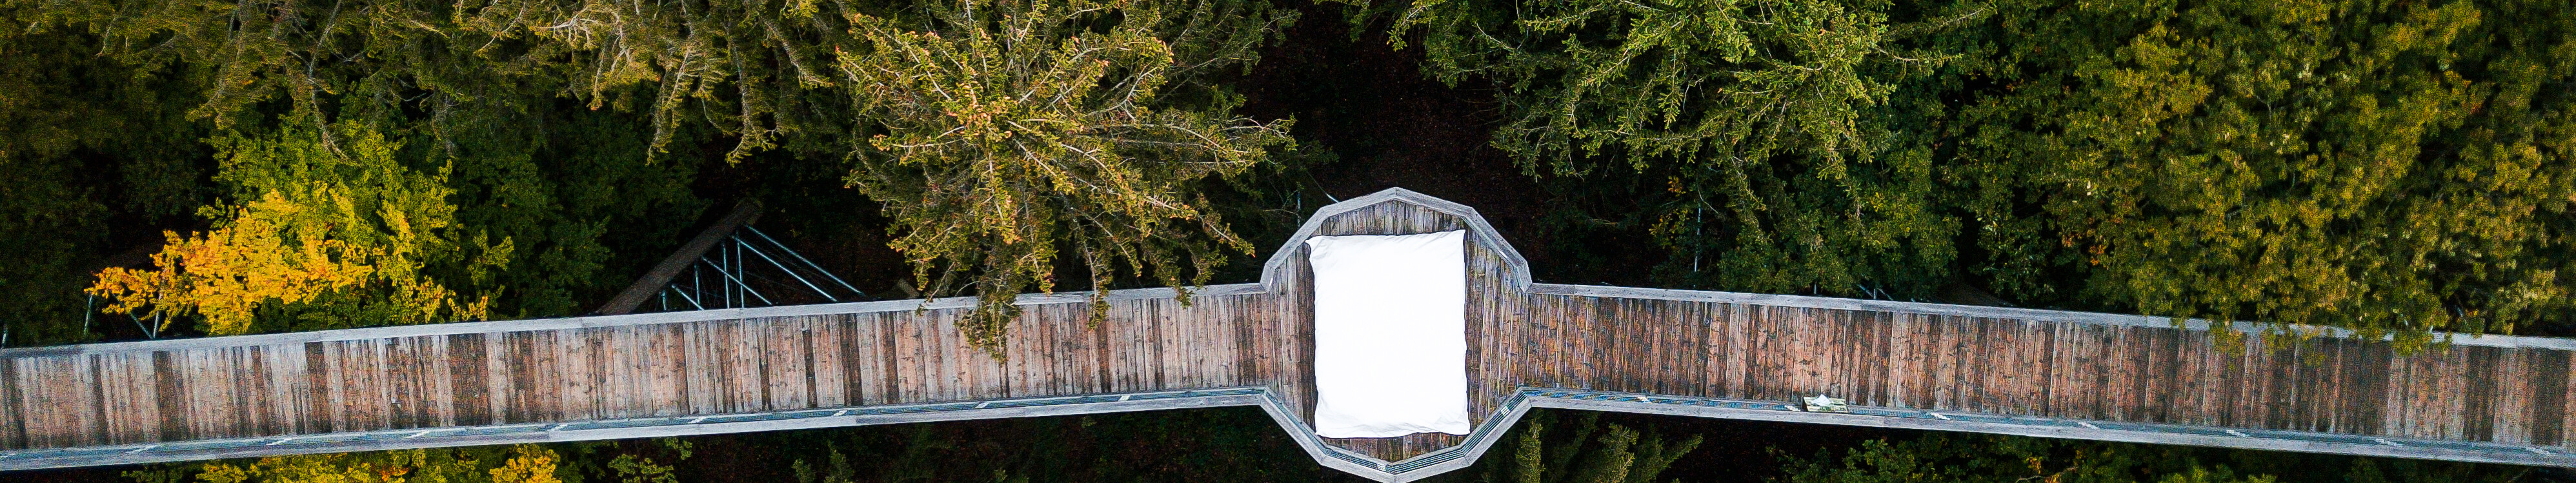 Blick von oben auf den Holzsteg des Panarbora Baumwipfelpfads mit runder Aussichtsplattform in der Mitte, auf der ein großes weißes Kissen liegt